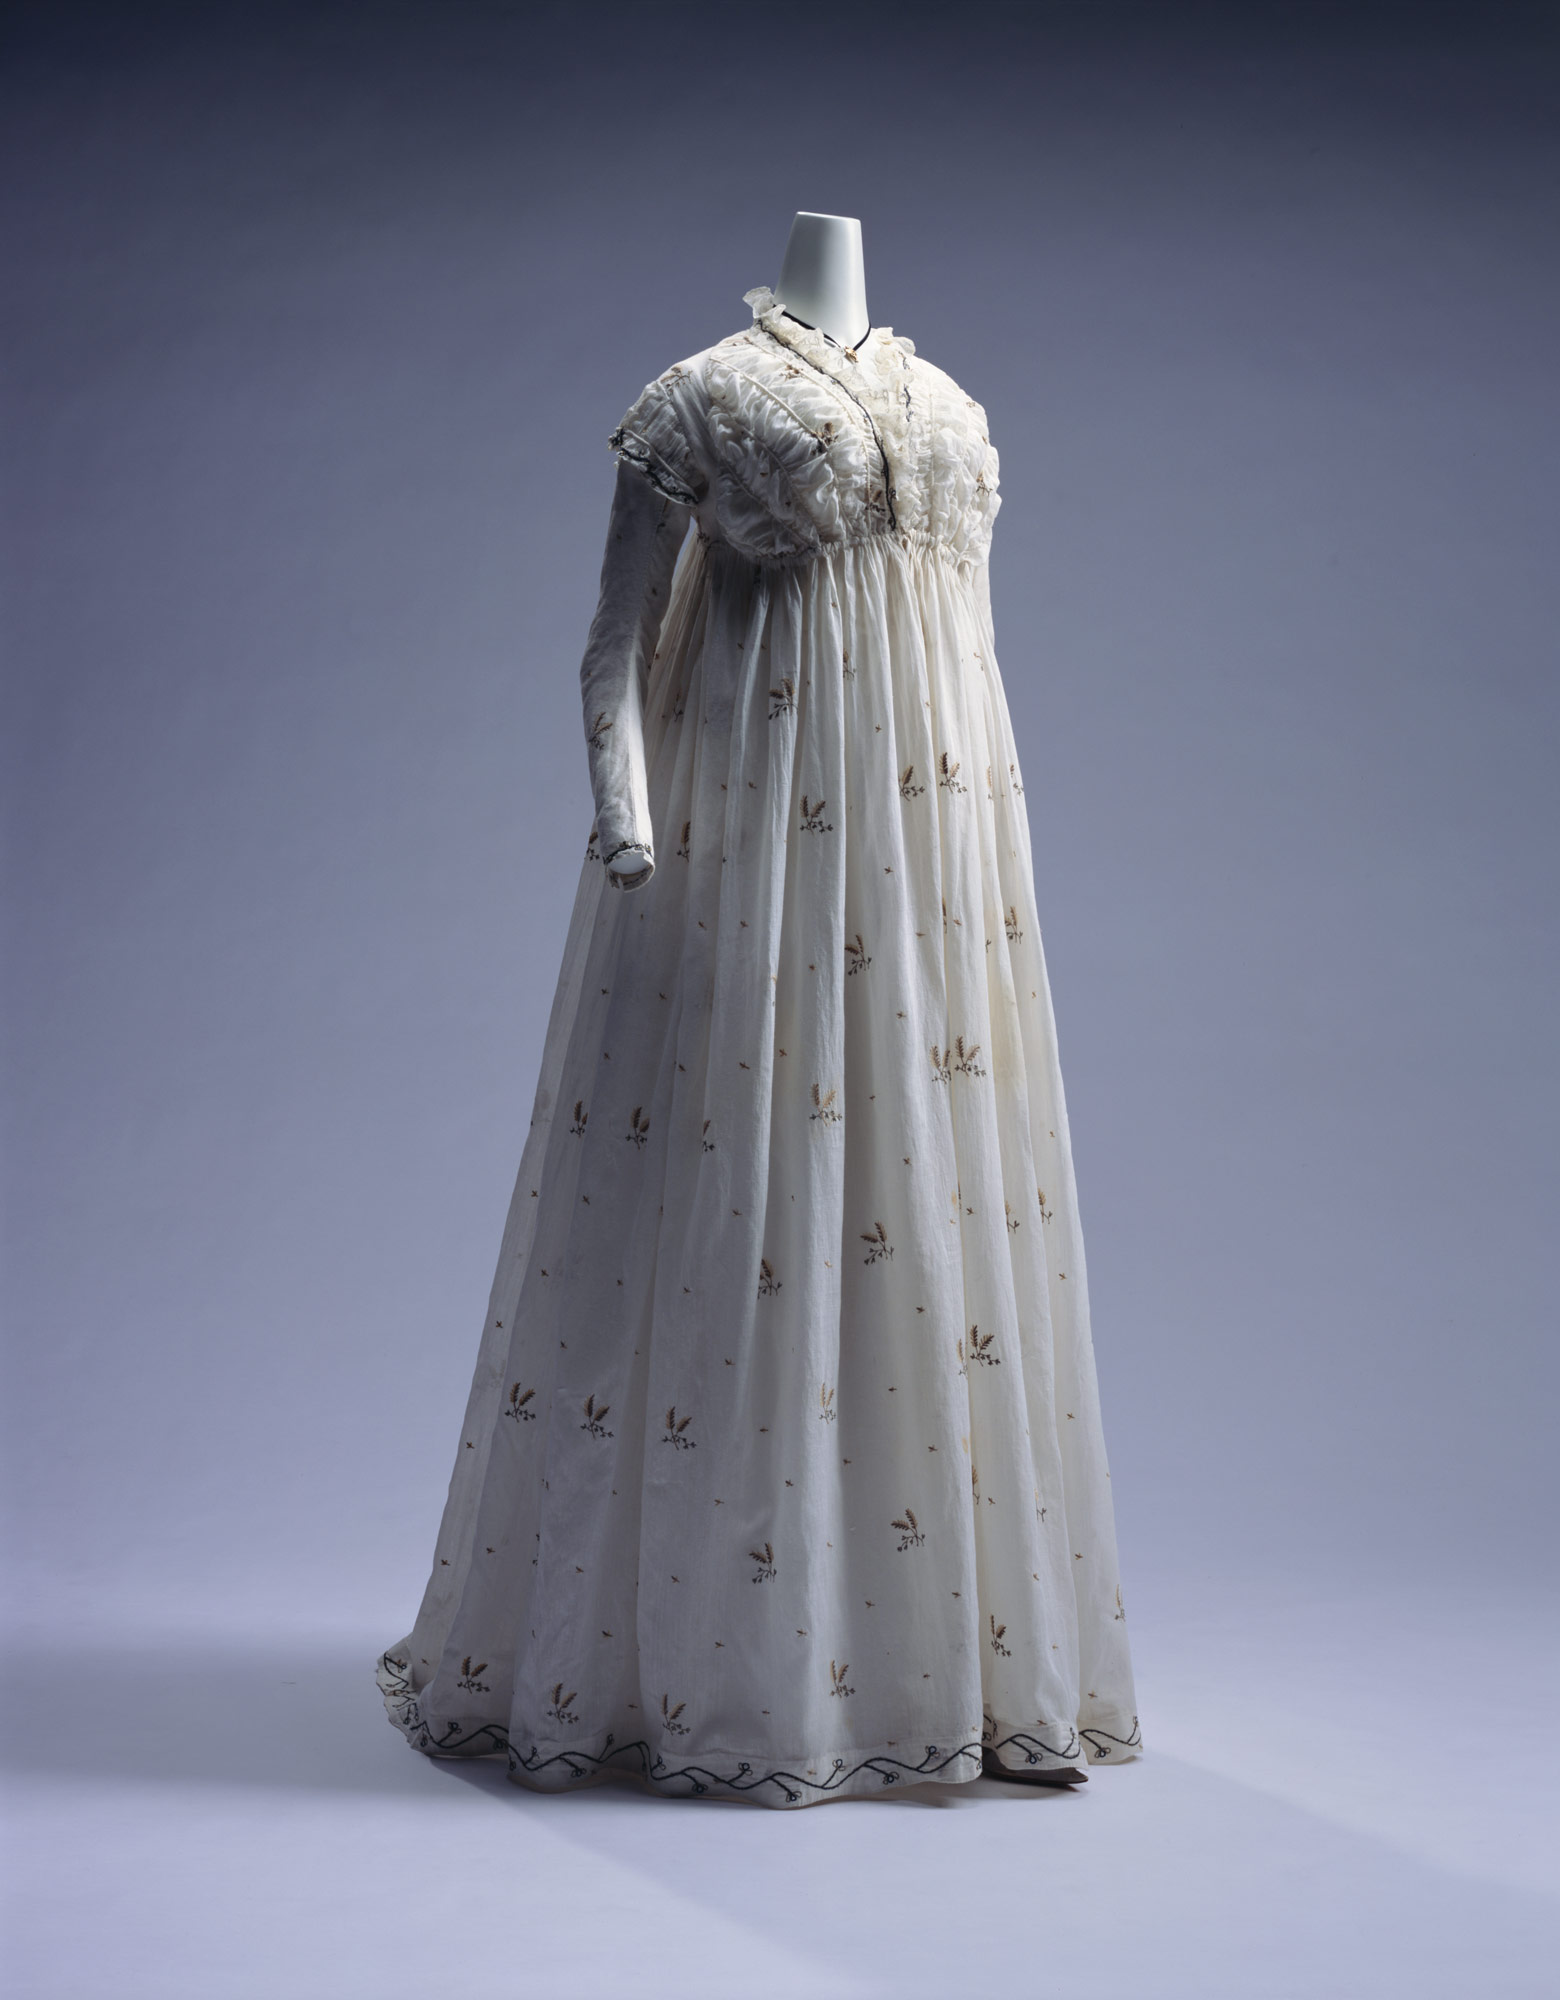 Dress (round gown)